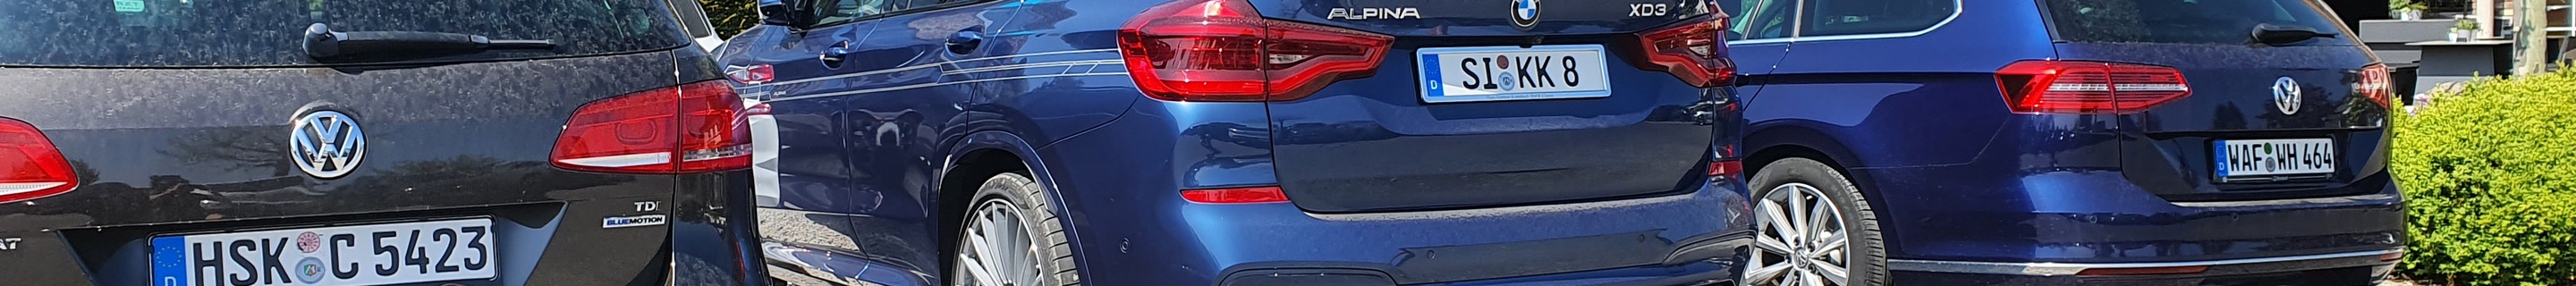 Alpina XD3 Allrad 2019